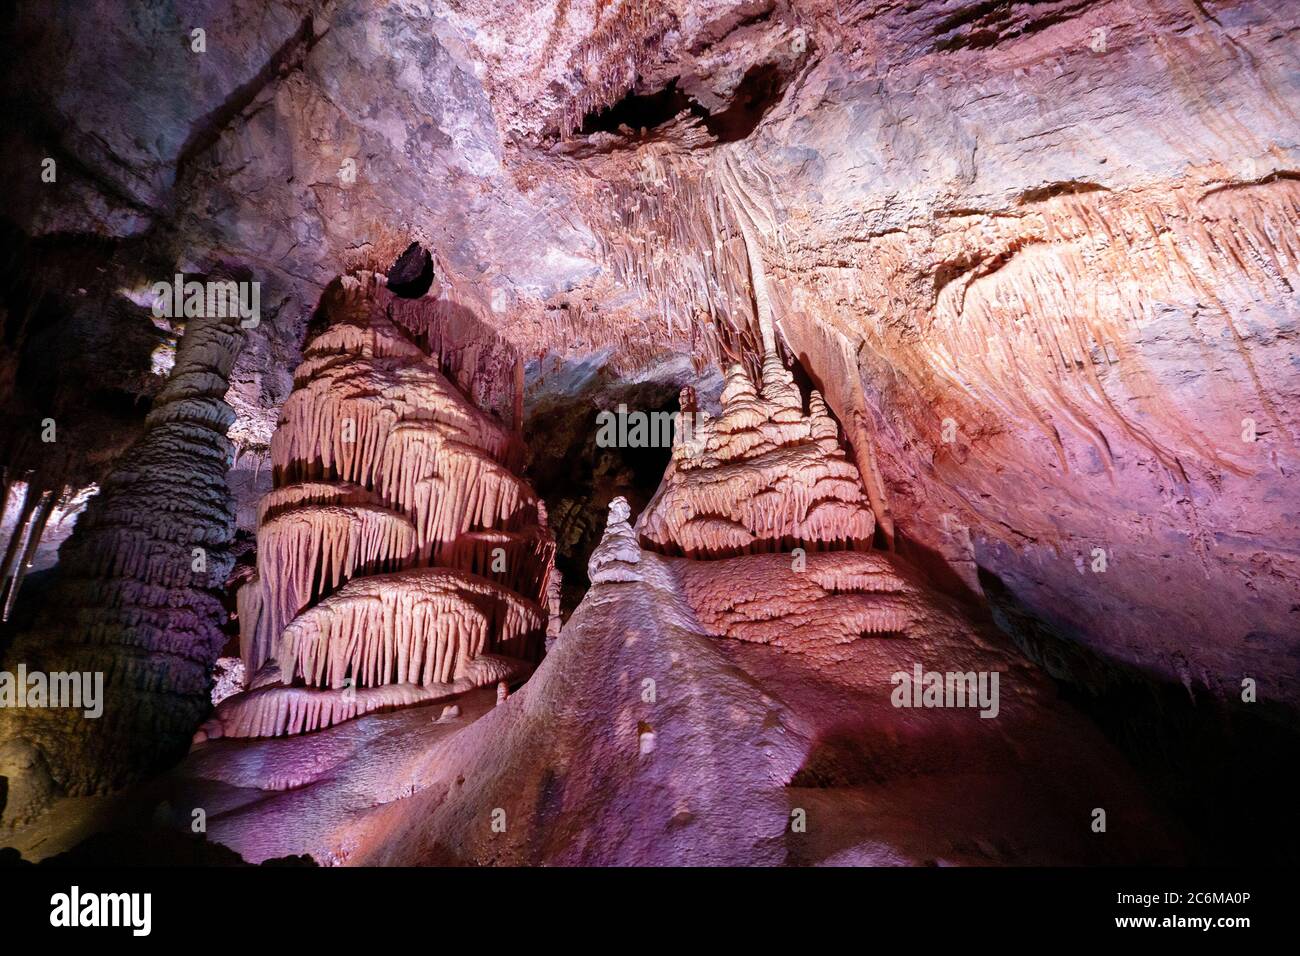 Kalksteinformationen bei Lewis and Clark Caverns in Montana, USA. Dieser Kalkstein wurde von Schichten von kalziumreichen Organismen, die in einem Meer, dass starb gebildet Stockfoto